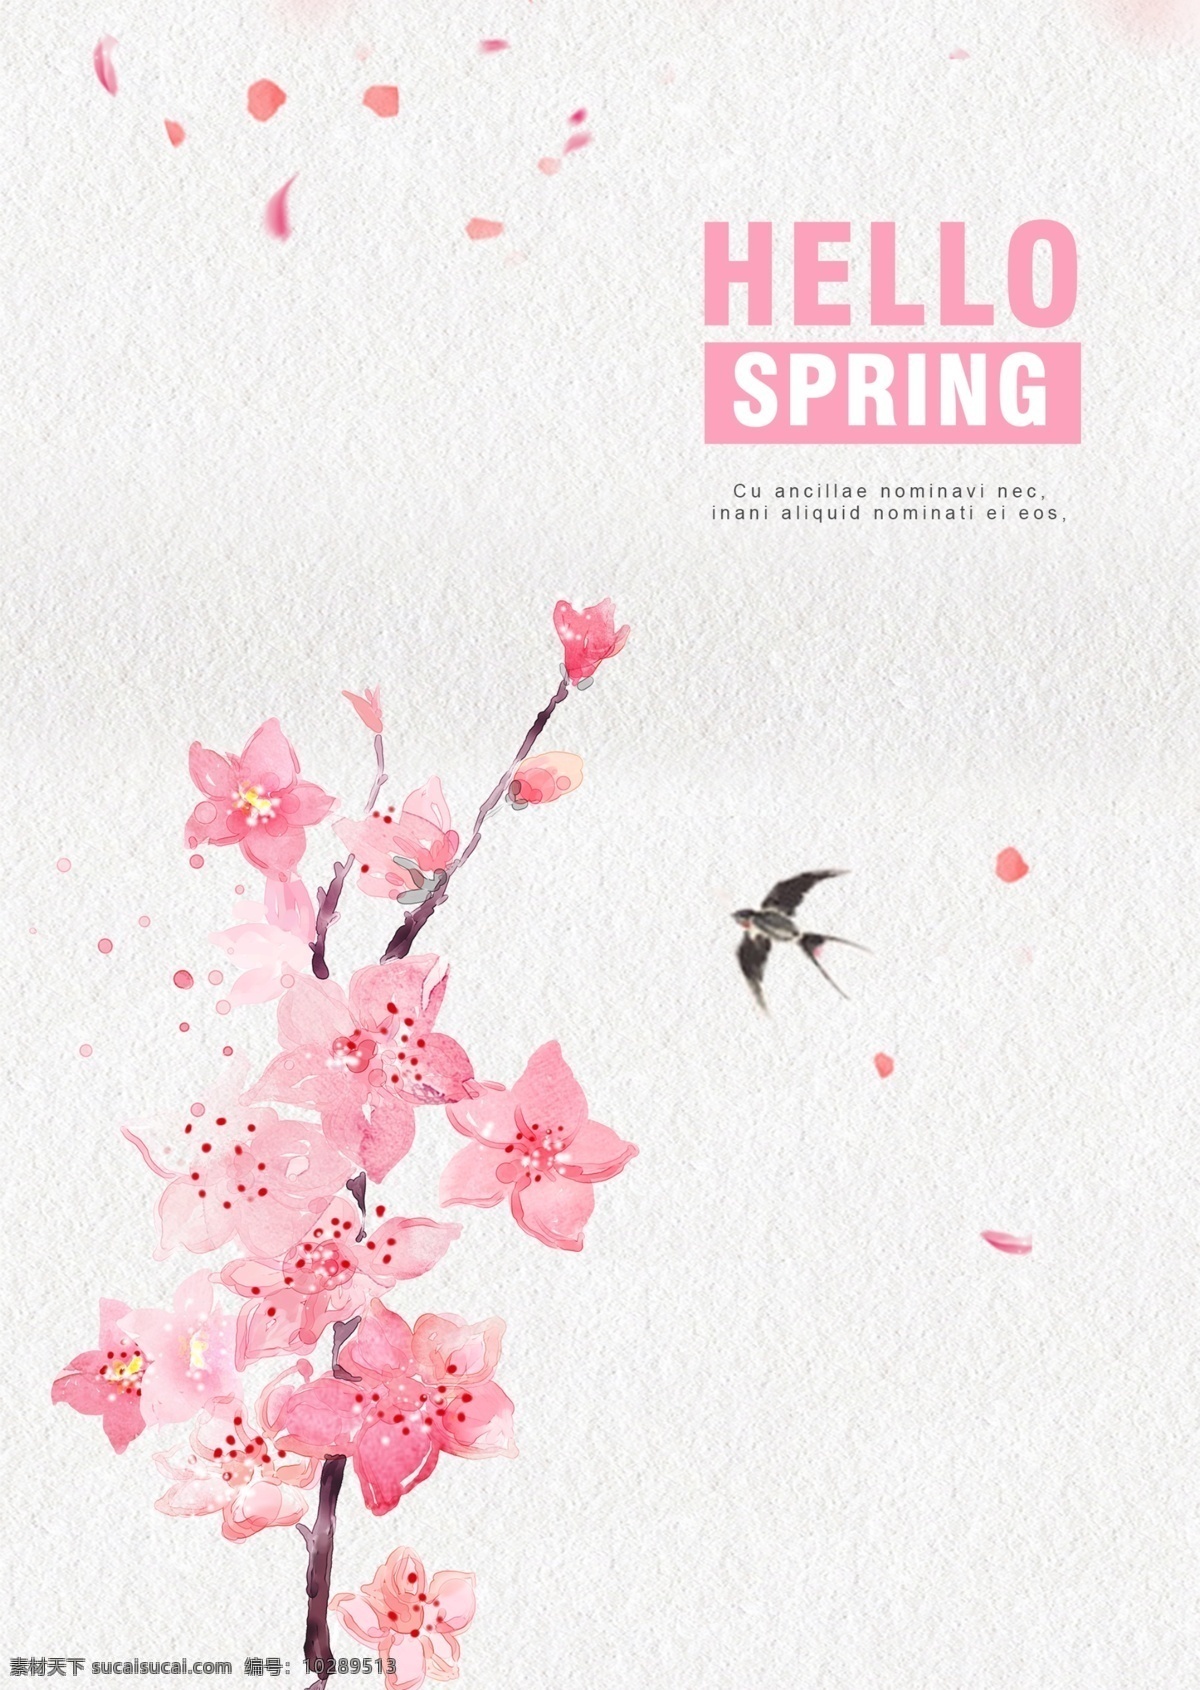 粉红色 手工 简洁 春天 促销 海报 简练 花 花瓣 春 沙哑 燕子